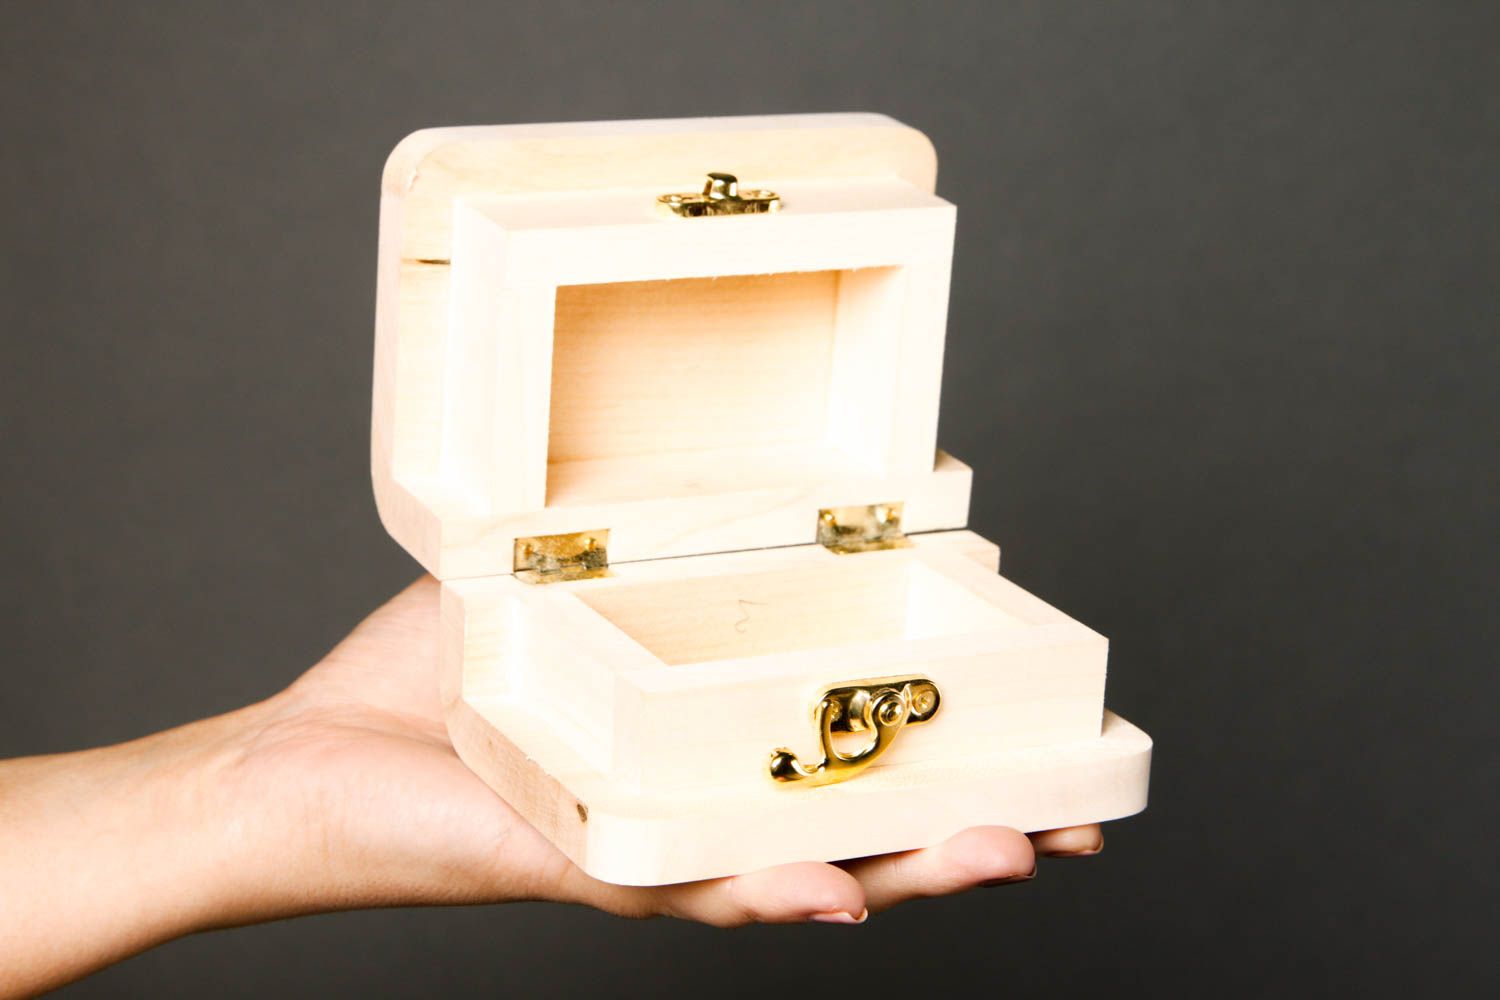 Cute handmade wooden blank box jewelry box design art materials art supplies photo 2